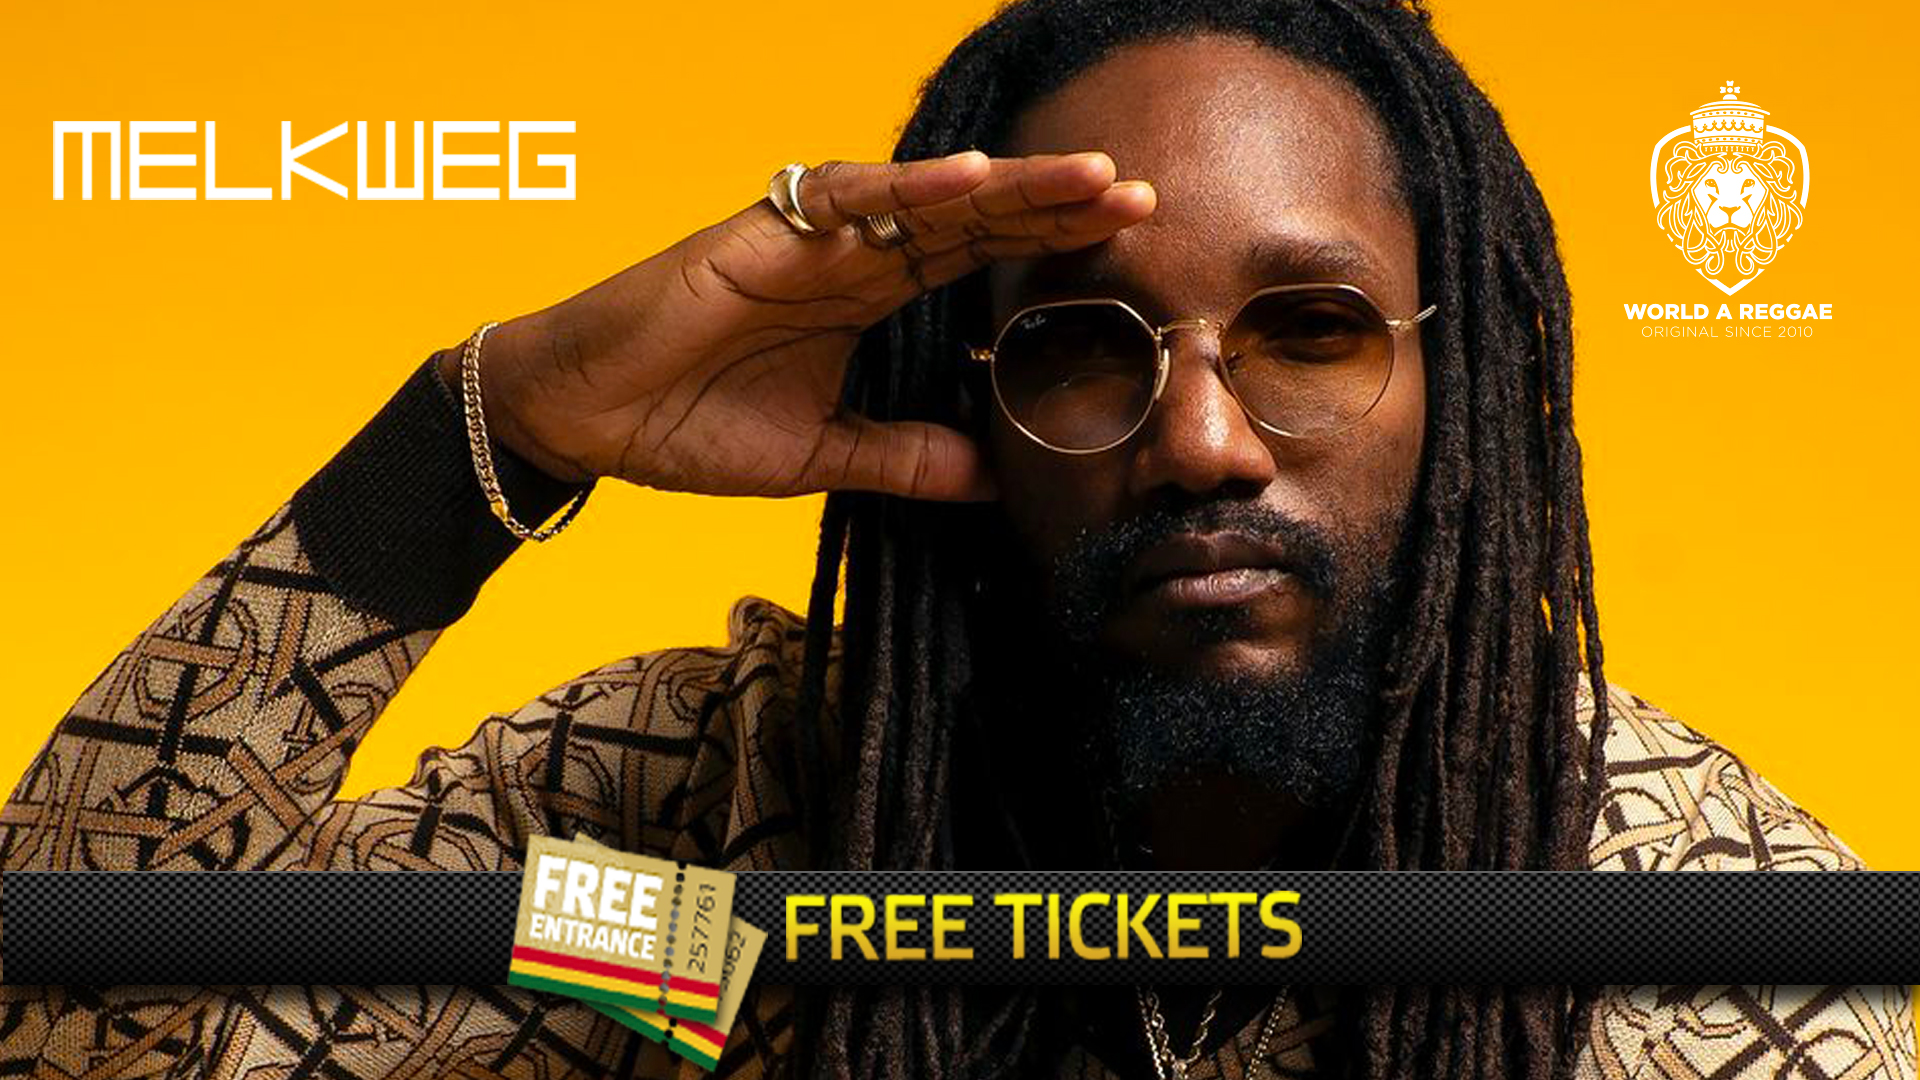 Kabaka Pyramid free tickets